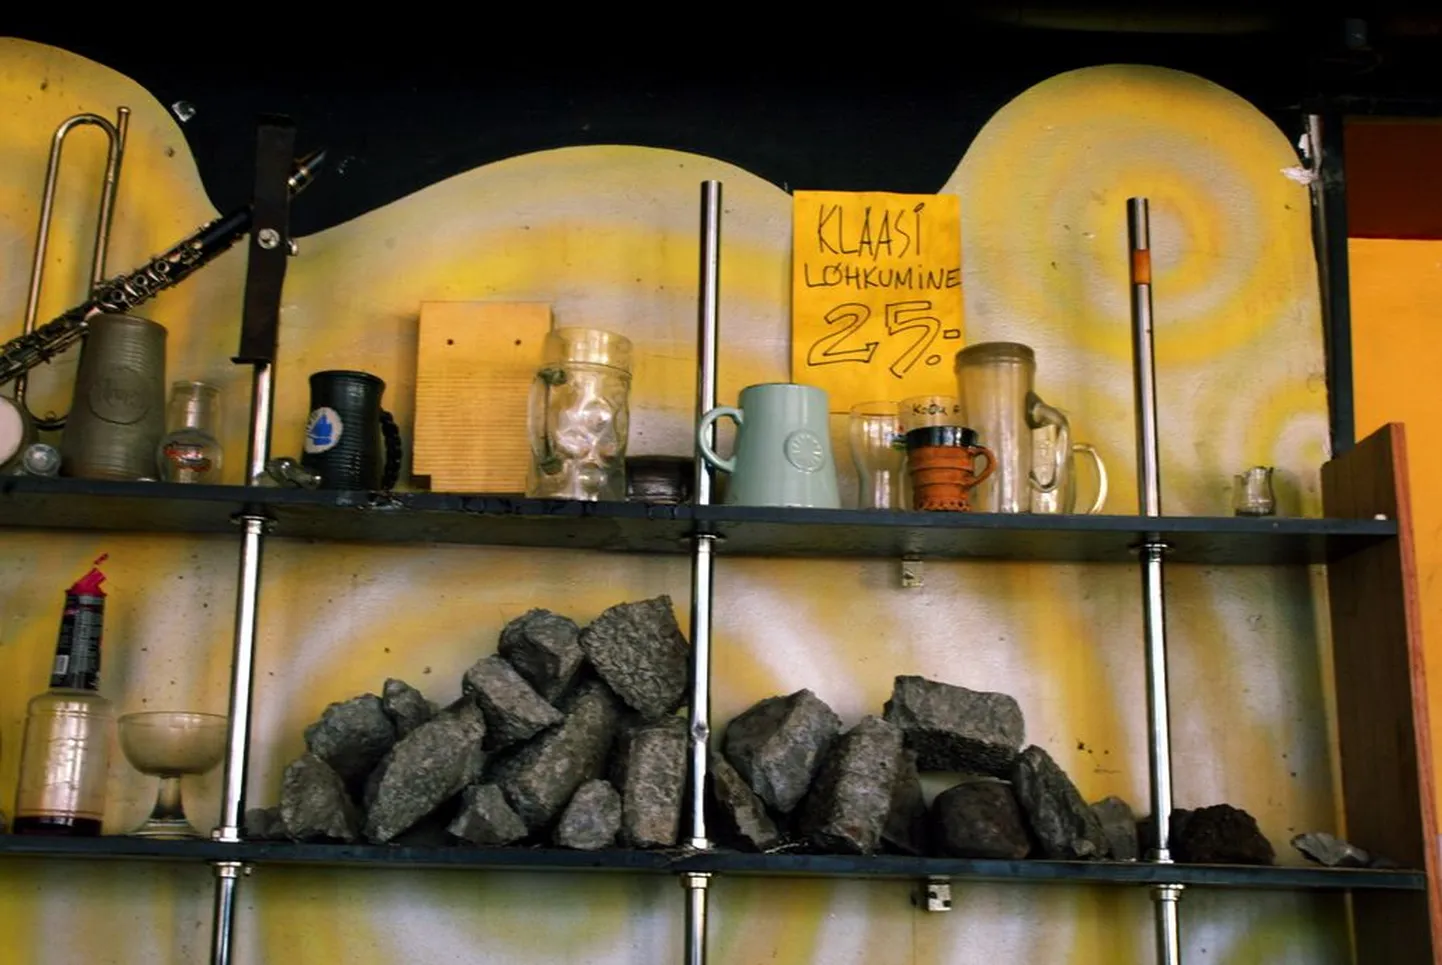 Камни, которые бросали в окна бара Woodstock, популярного среди эстонских националистов, теперь лежат на полке за стойкой бара.